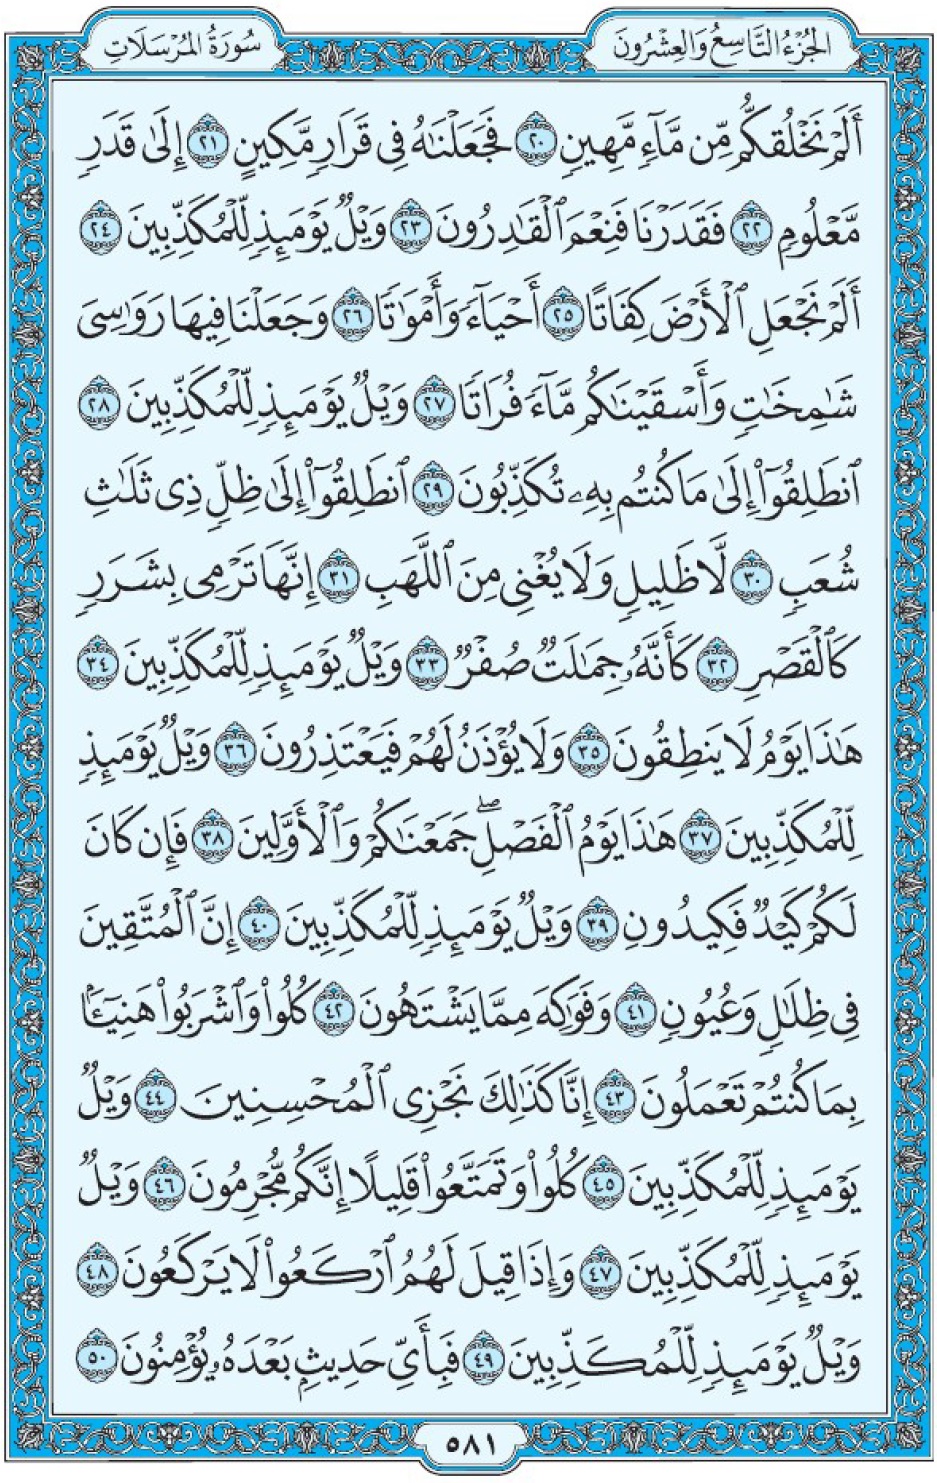 Коран Мединский мусхаф страница 581, аль-Мурсалят аят 20-50